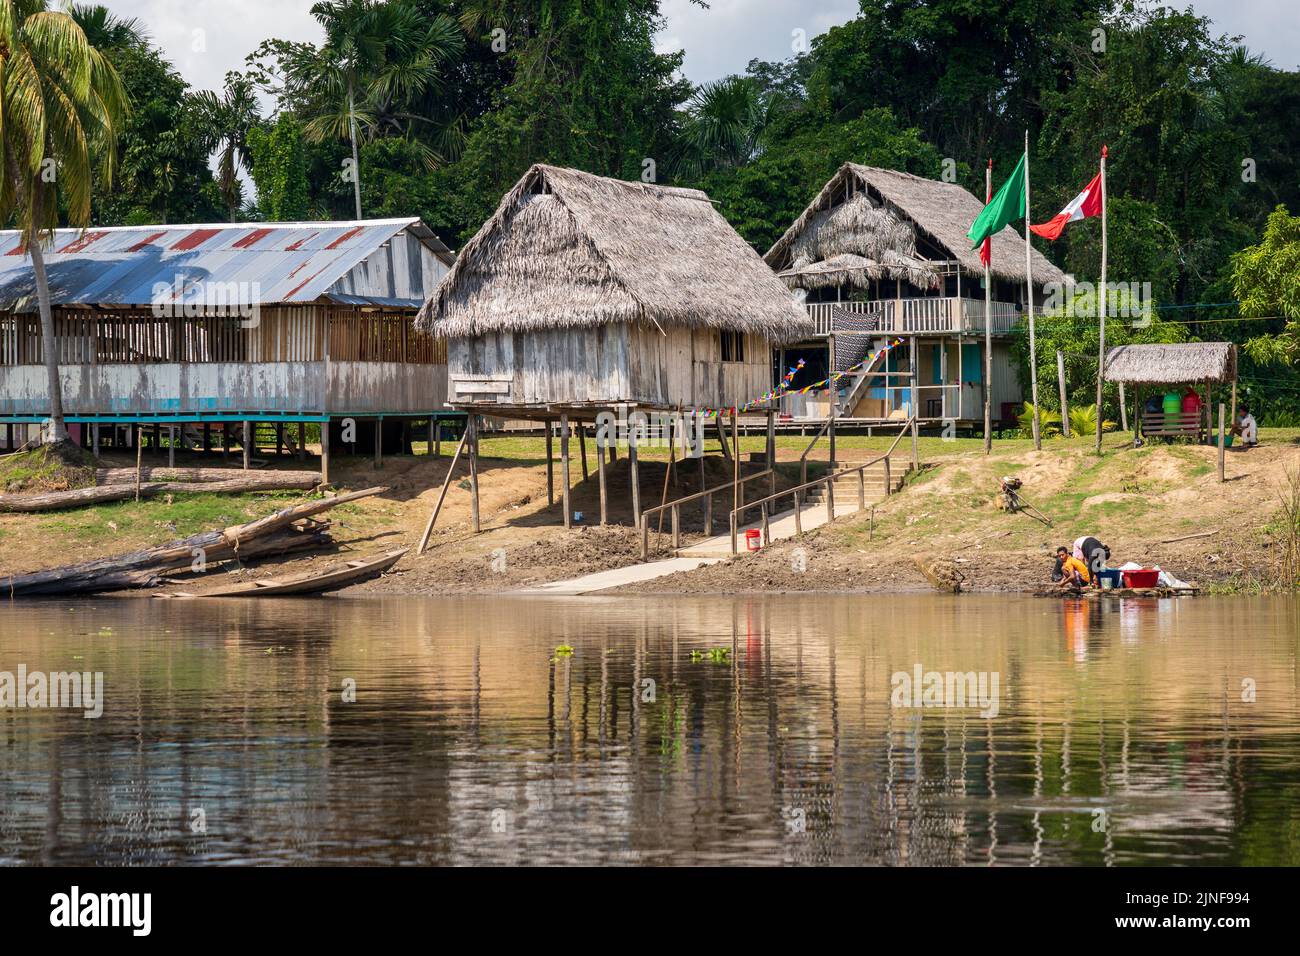 Hütten auf Stelzen sind im Allgemeinen die akzeptierten Wohnungen im peruanischen Amazonas unter den Riberenos Gemeinden Stockfoto